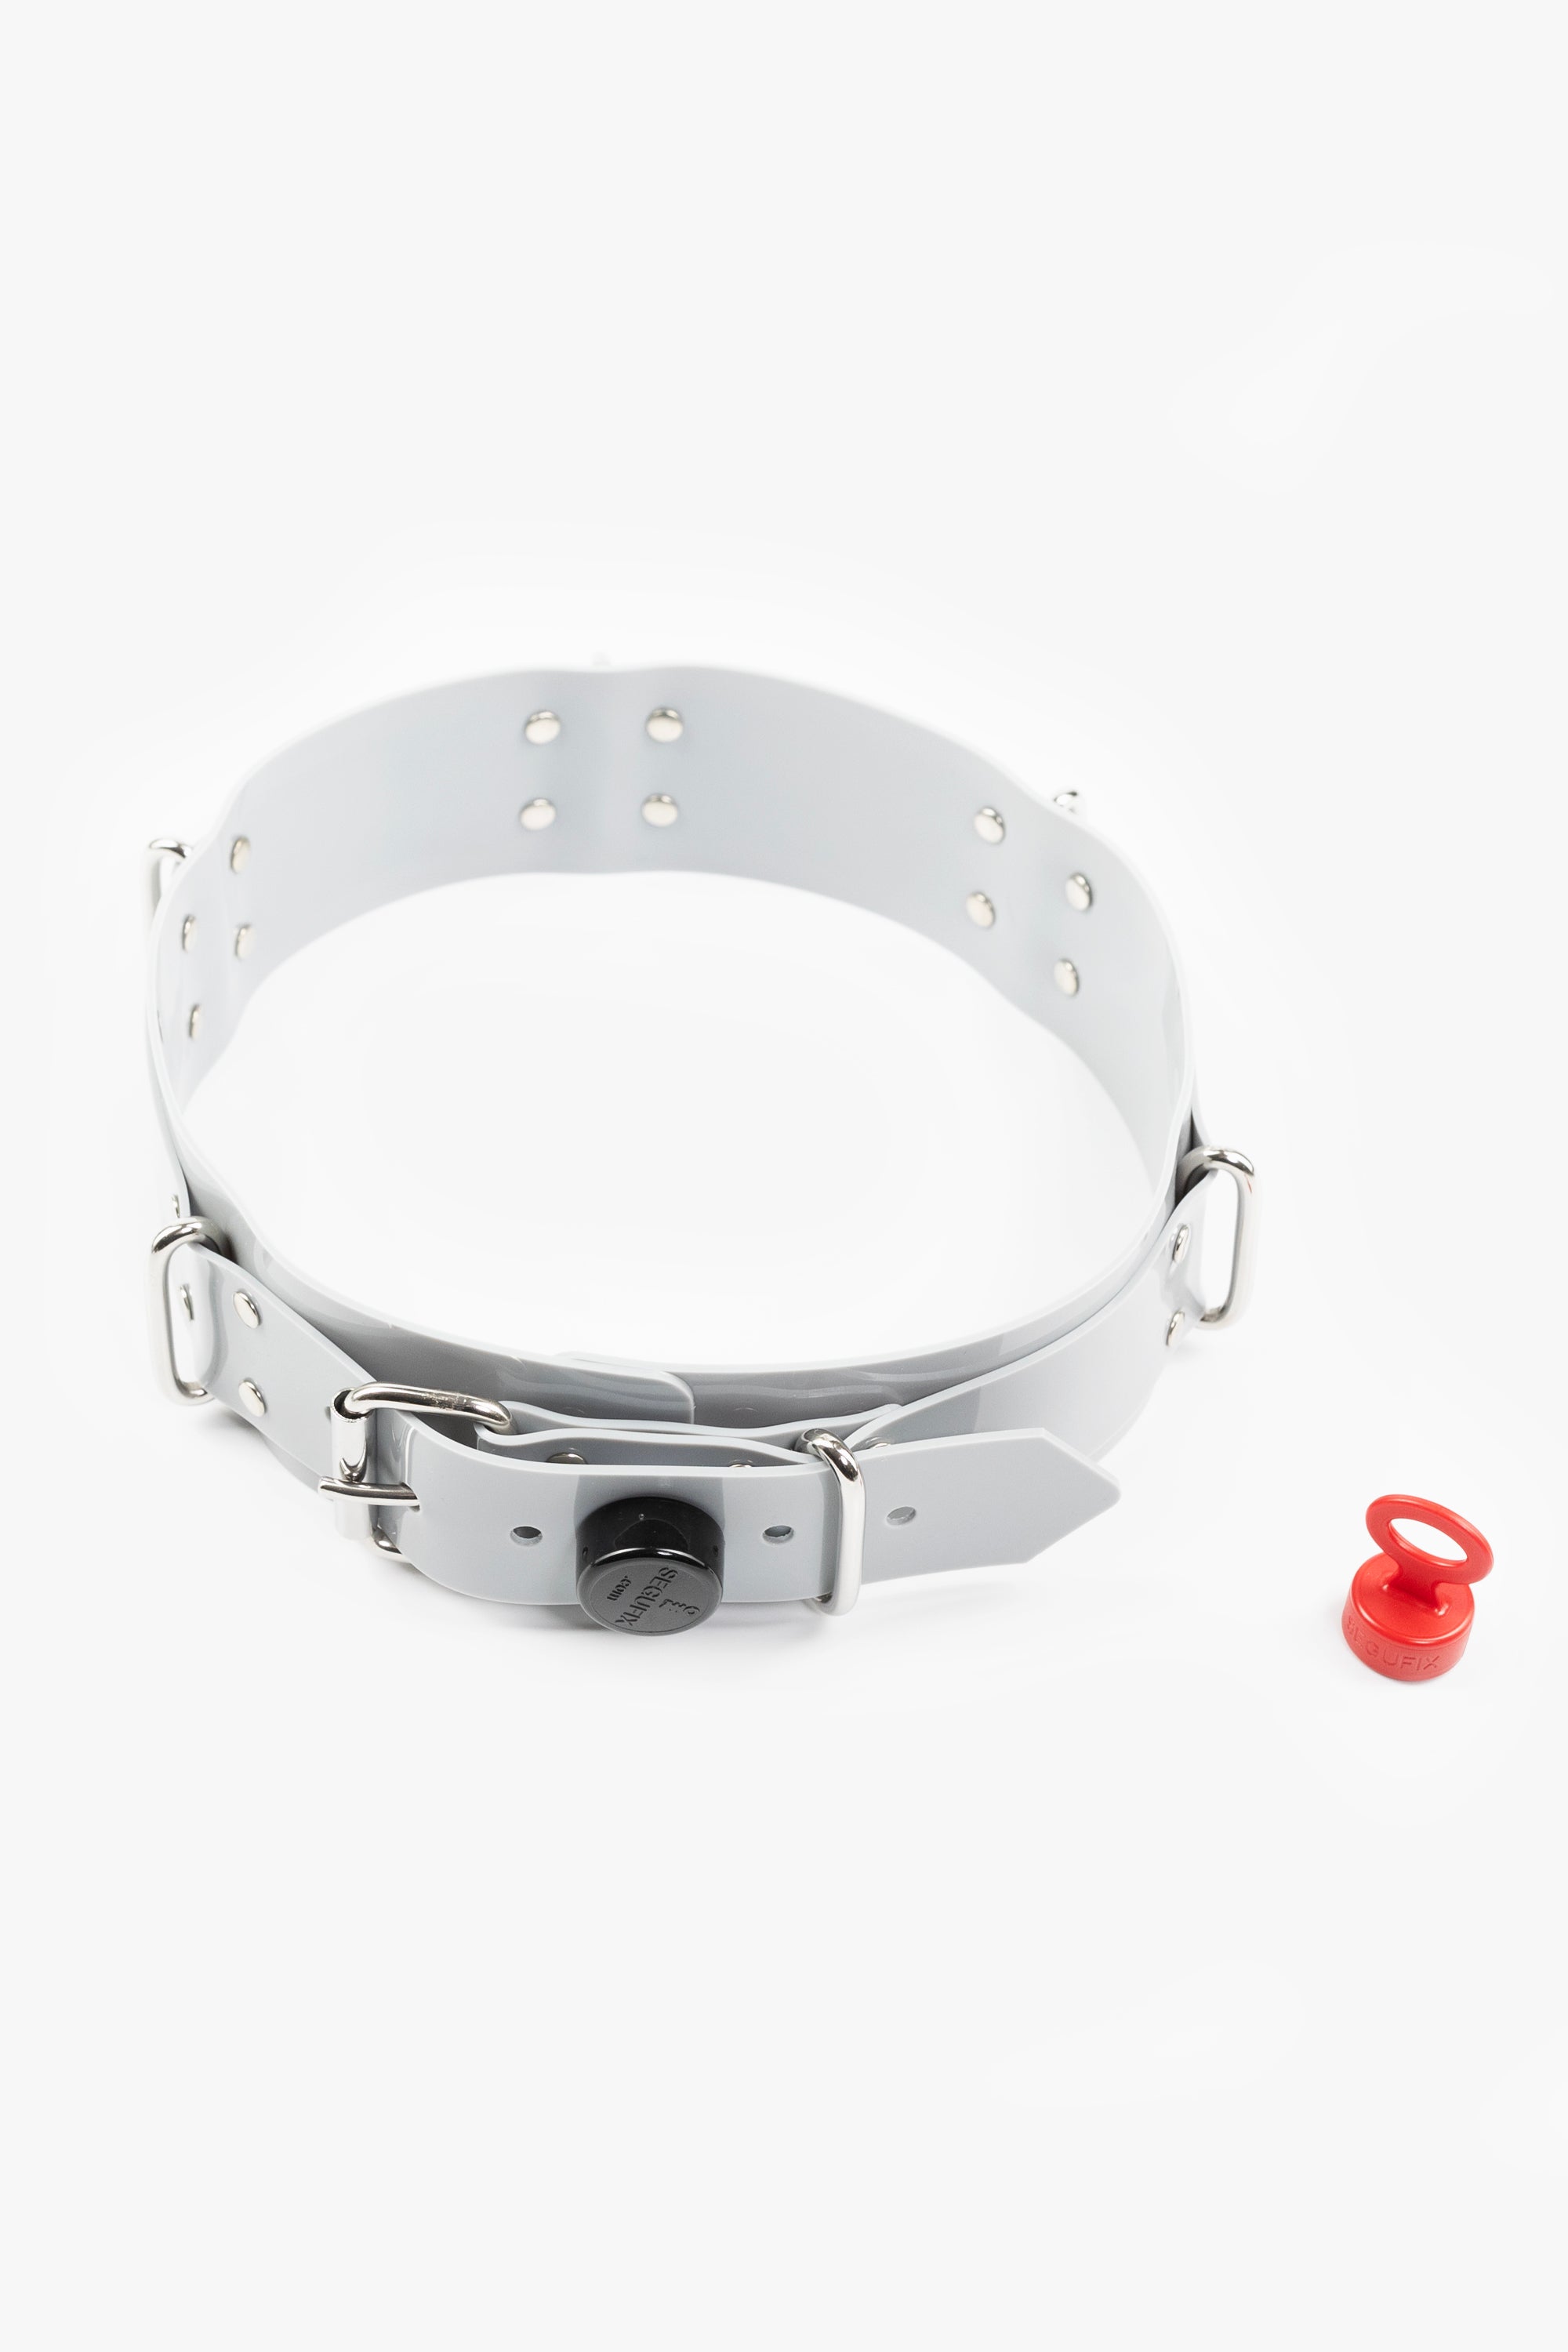 Lockable segufix waist belt, light grey/chrome